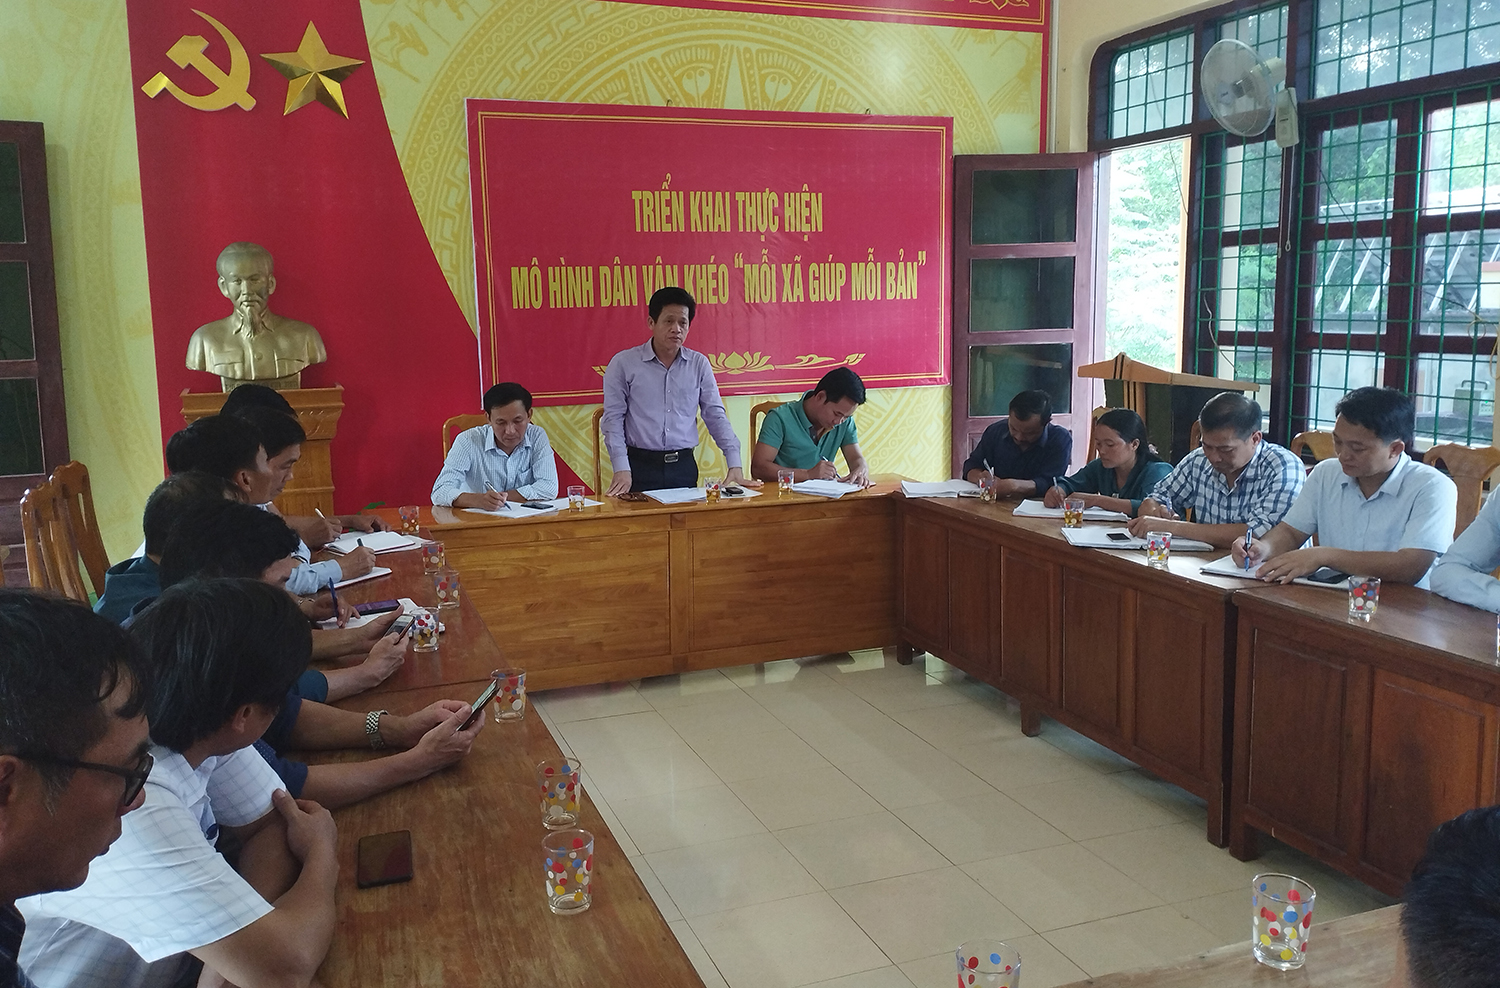 Đồng chí Trưởng ban Dân vận Tỉnh ủy Lê Văn Bảo kết luận buổi làm việc.